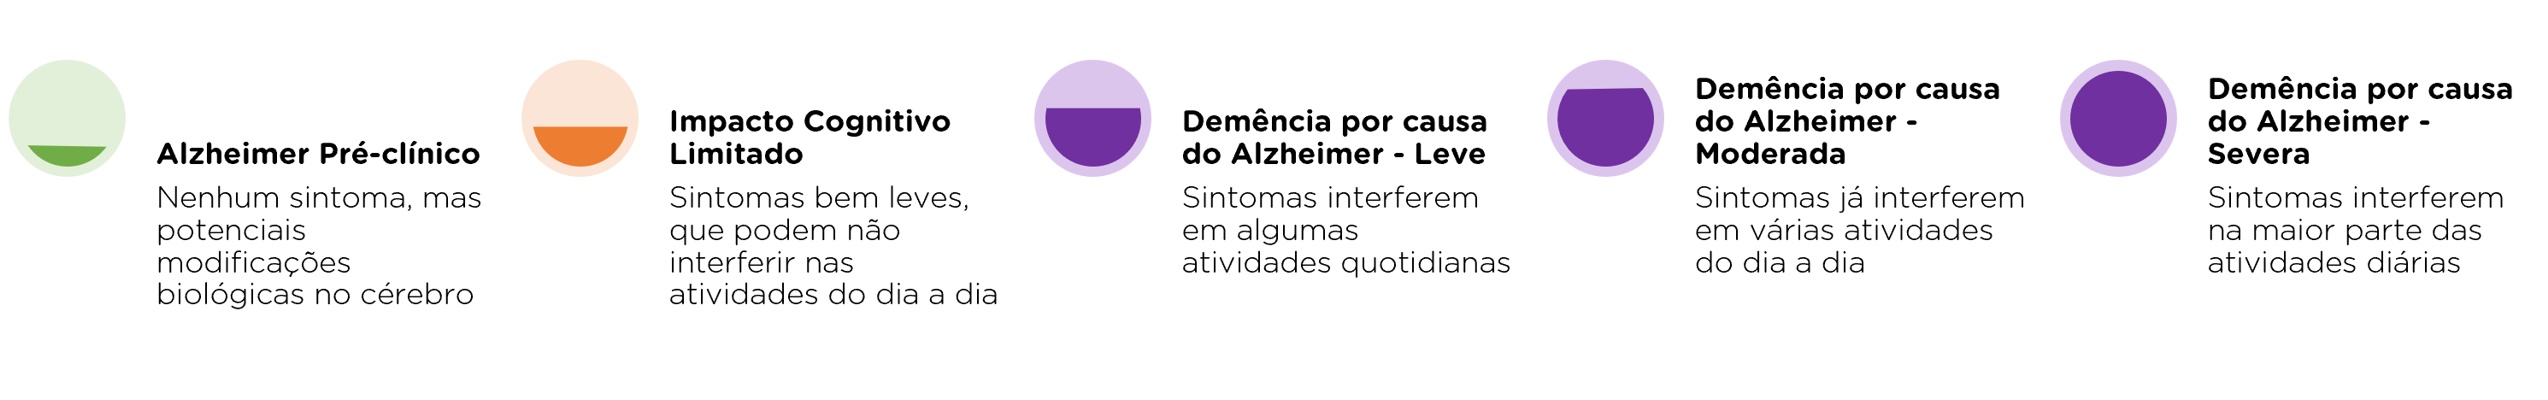 Hospital Vera Cruz - Blog - O que acontece no cerebro com Alzheimer - grafico